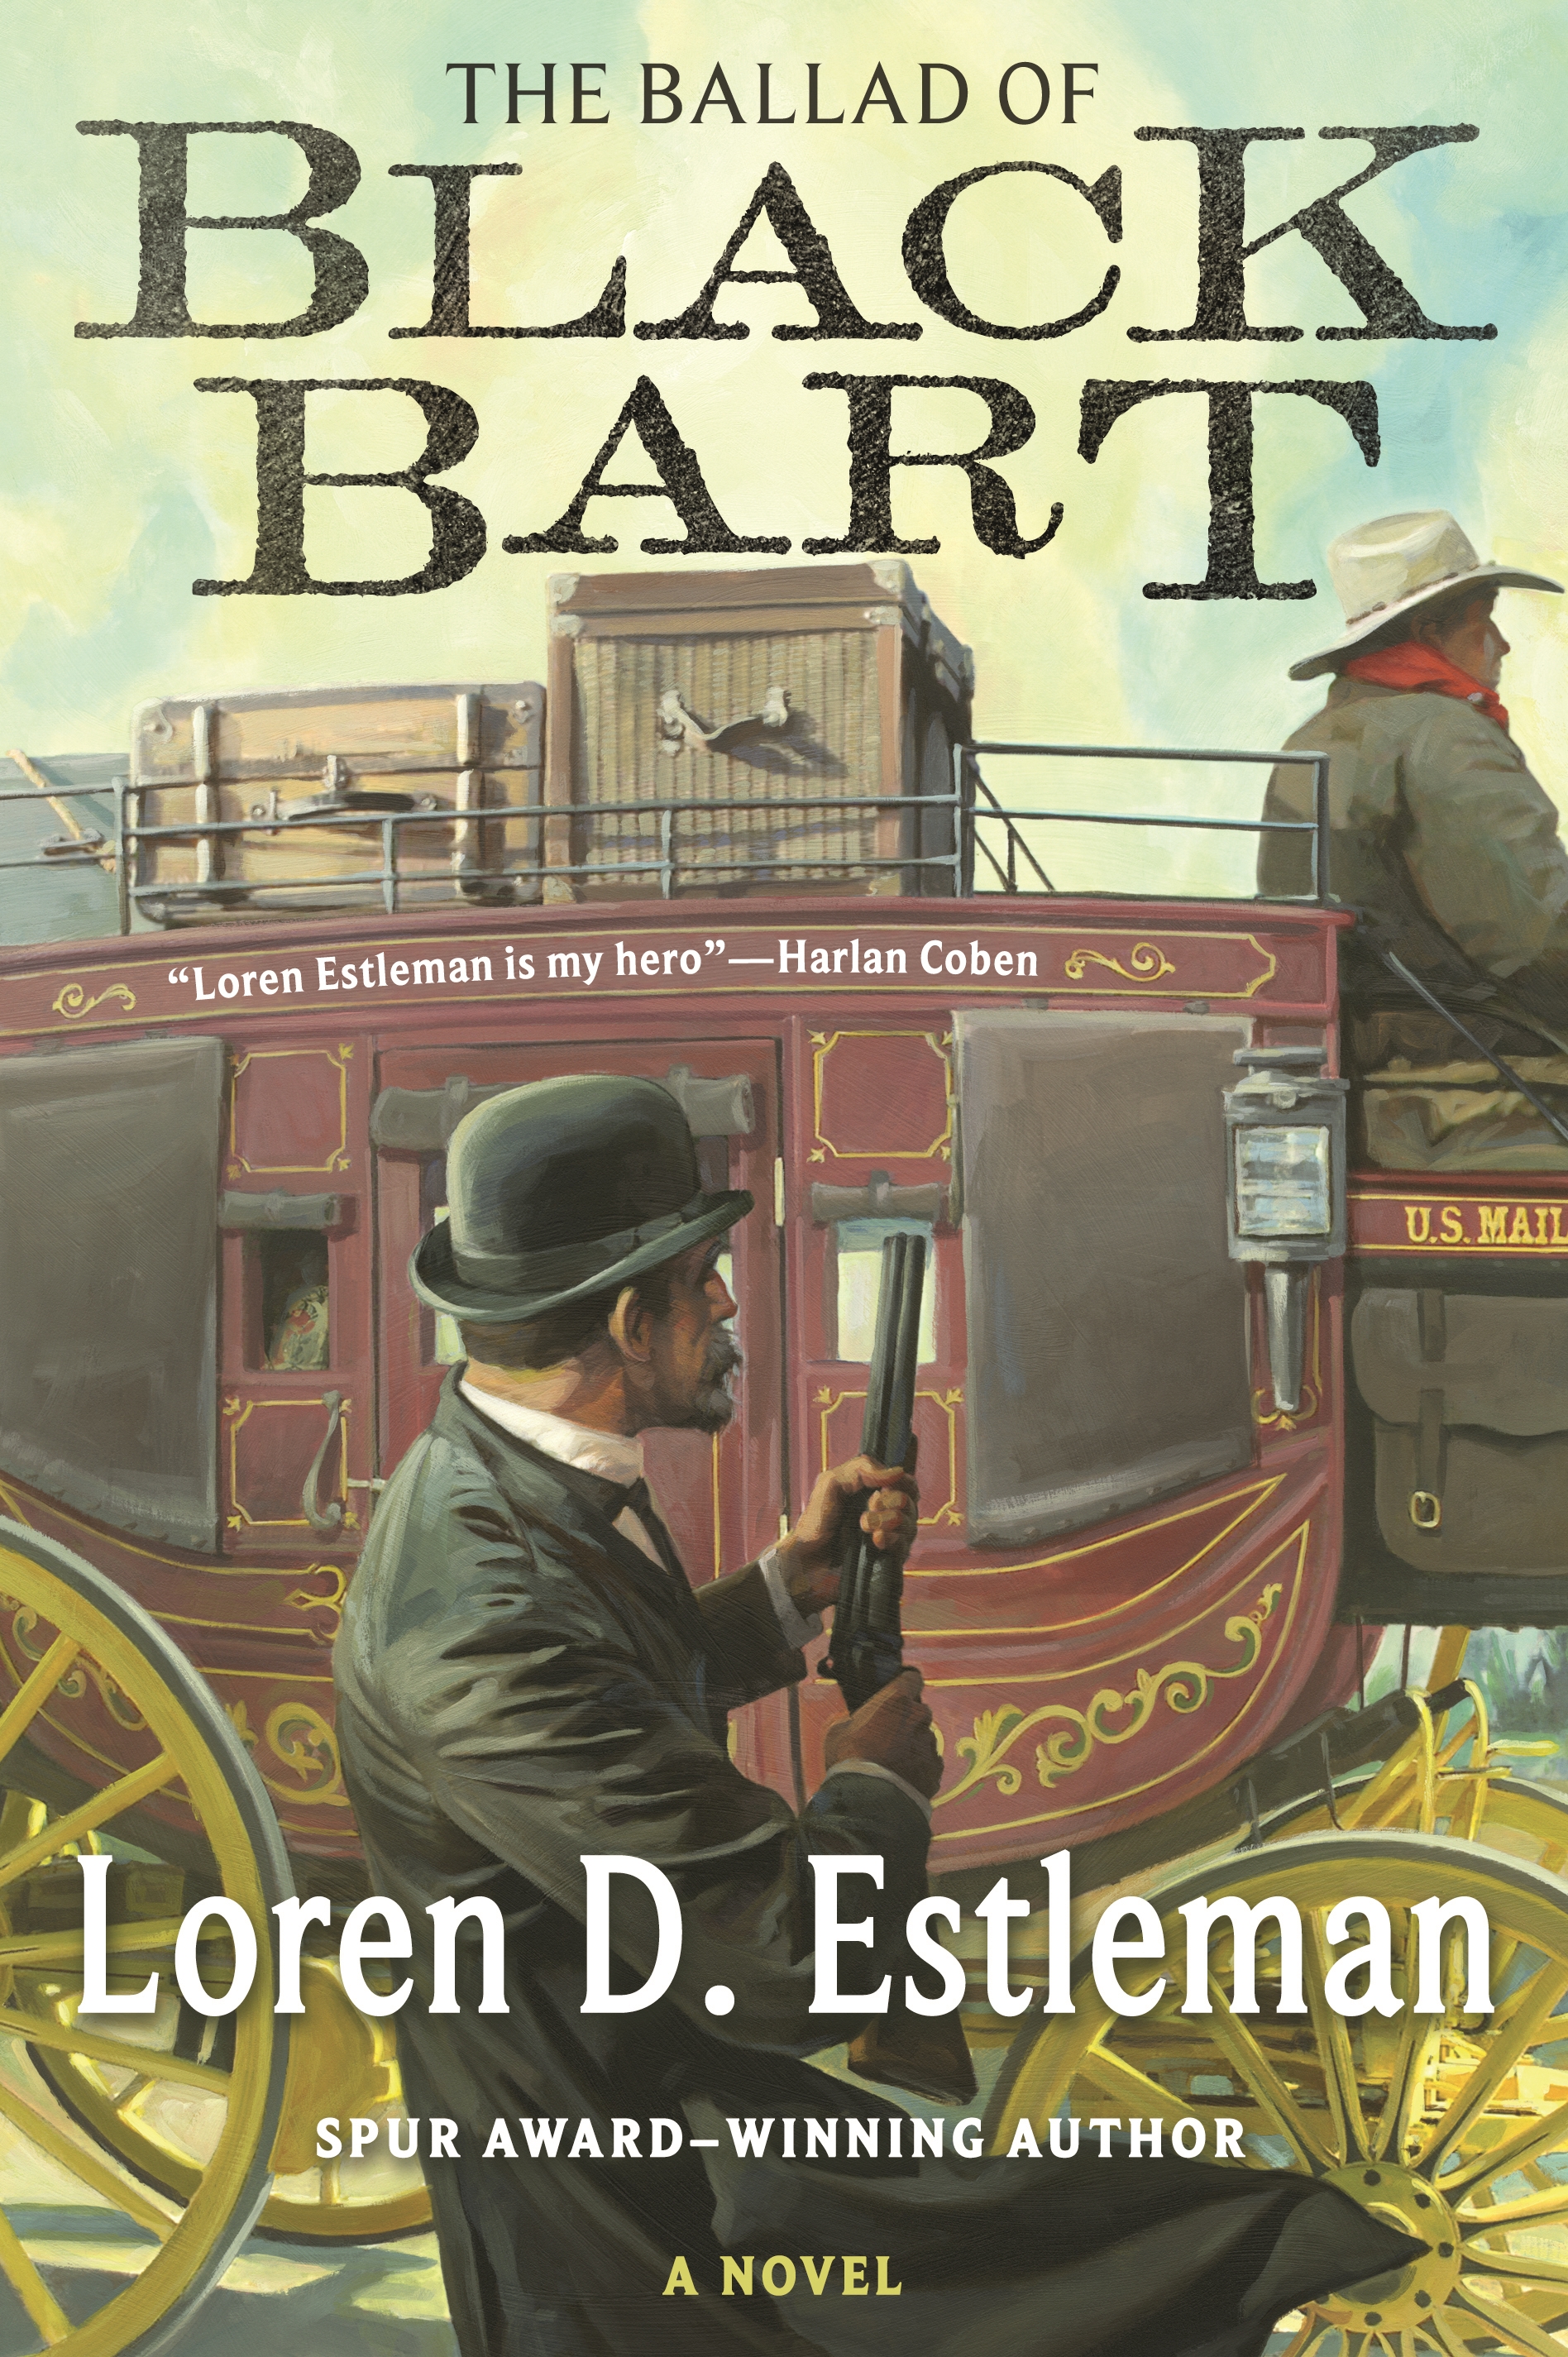 The Ballad of Black Bart : A Novel by Loren D. Estleman